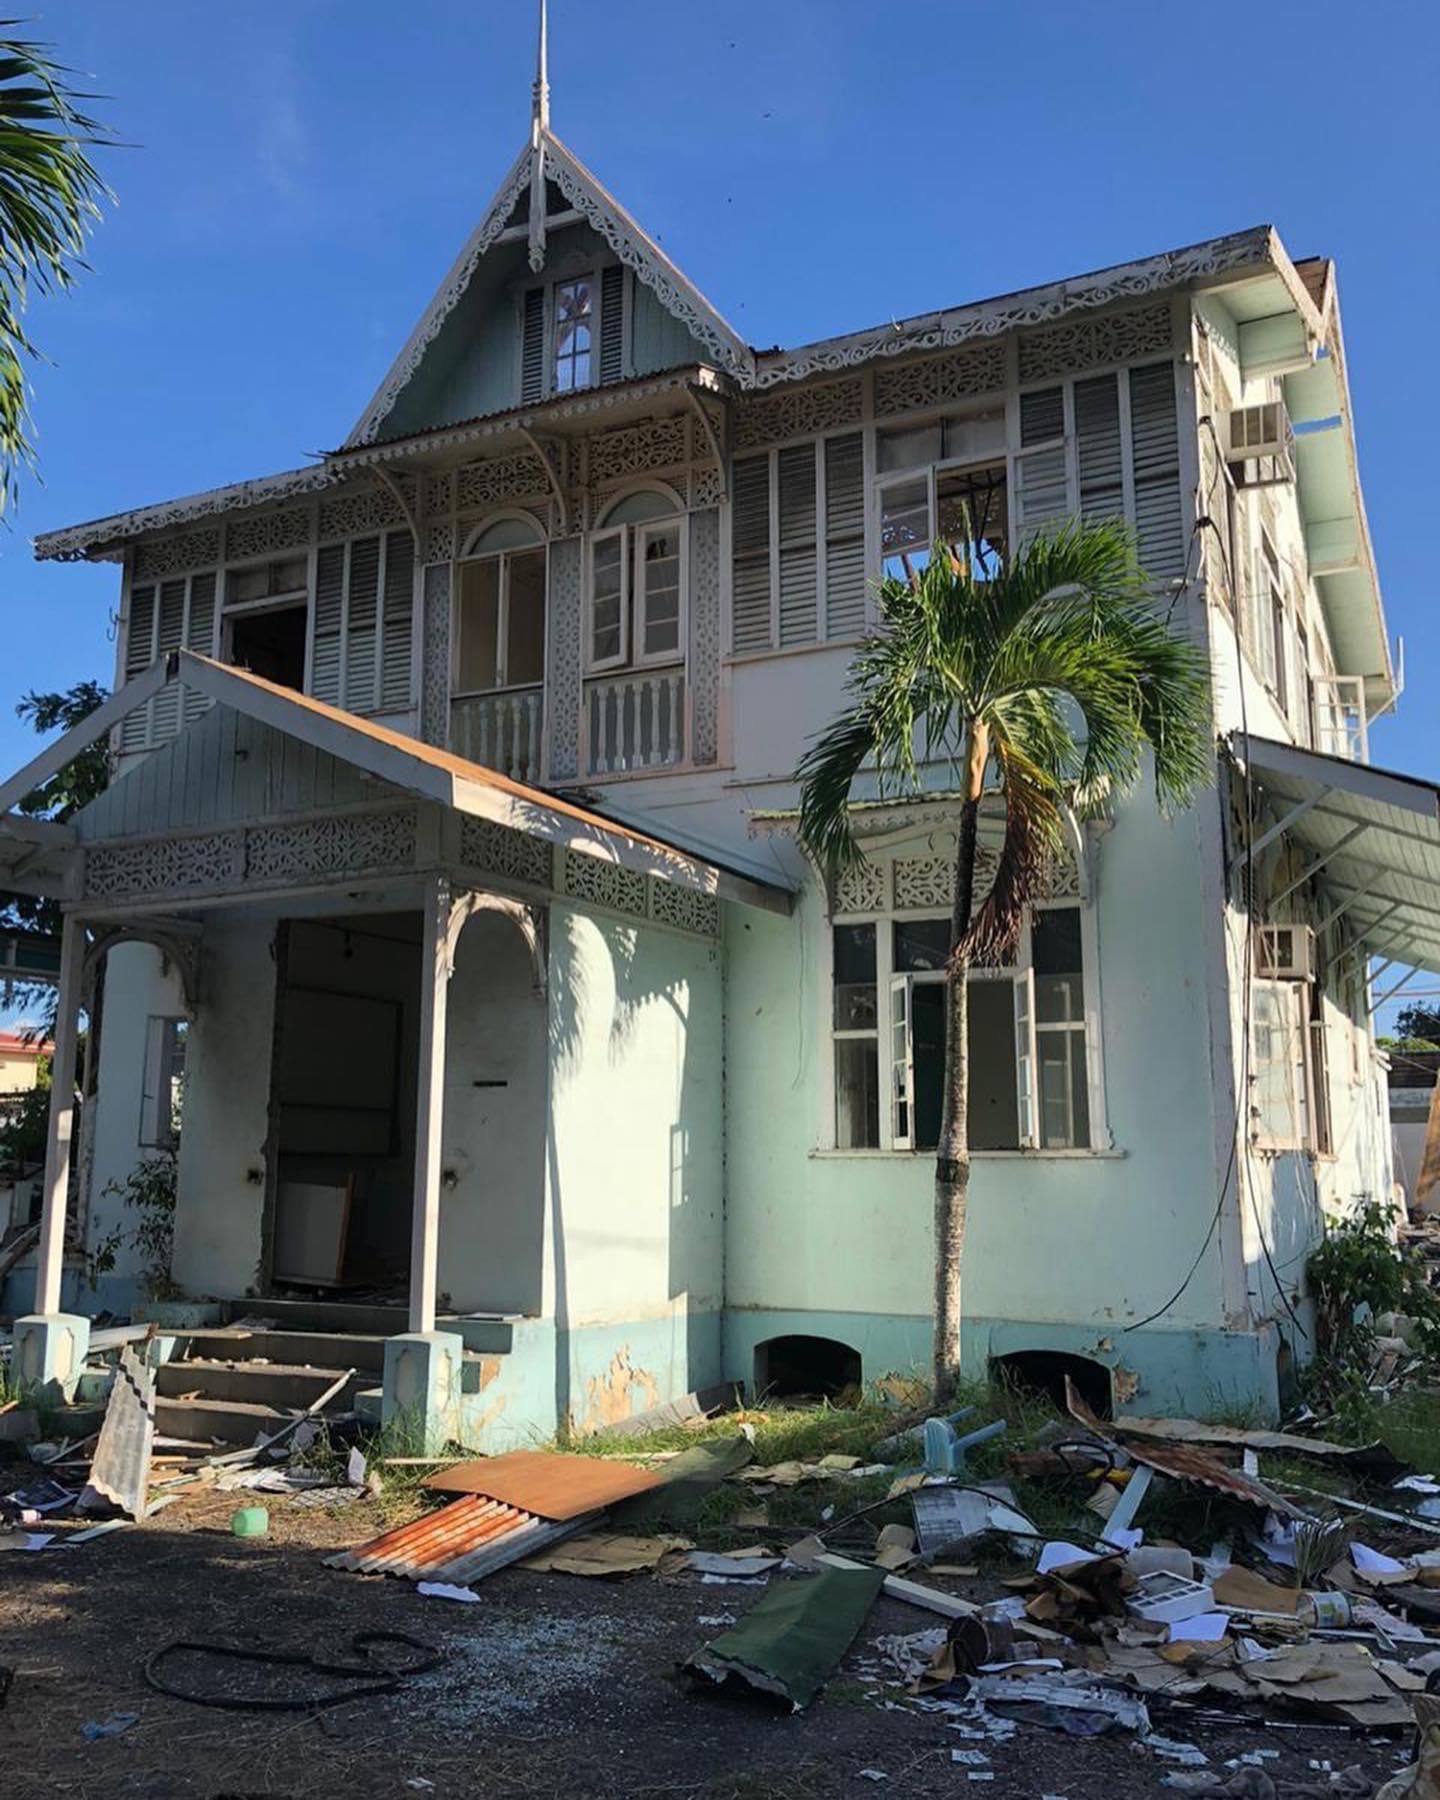 Demolition of ‘Gingerbread House’ on Jerningham Avenue